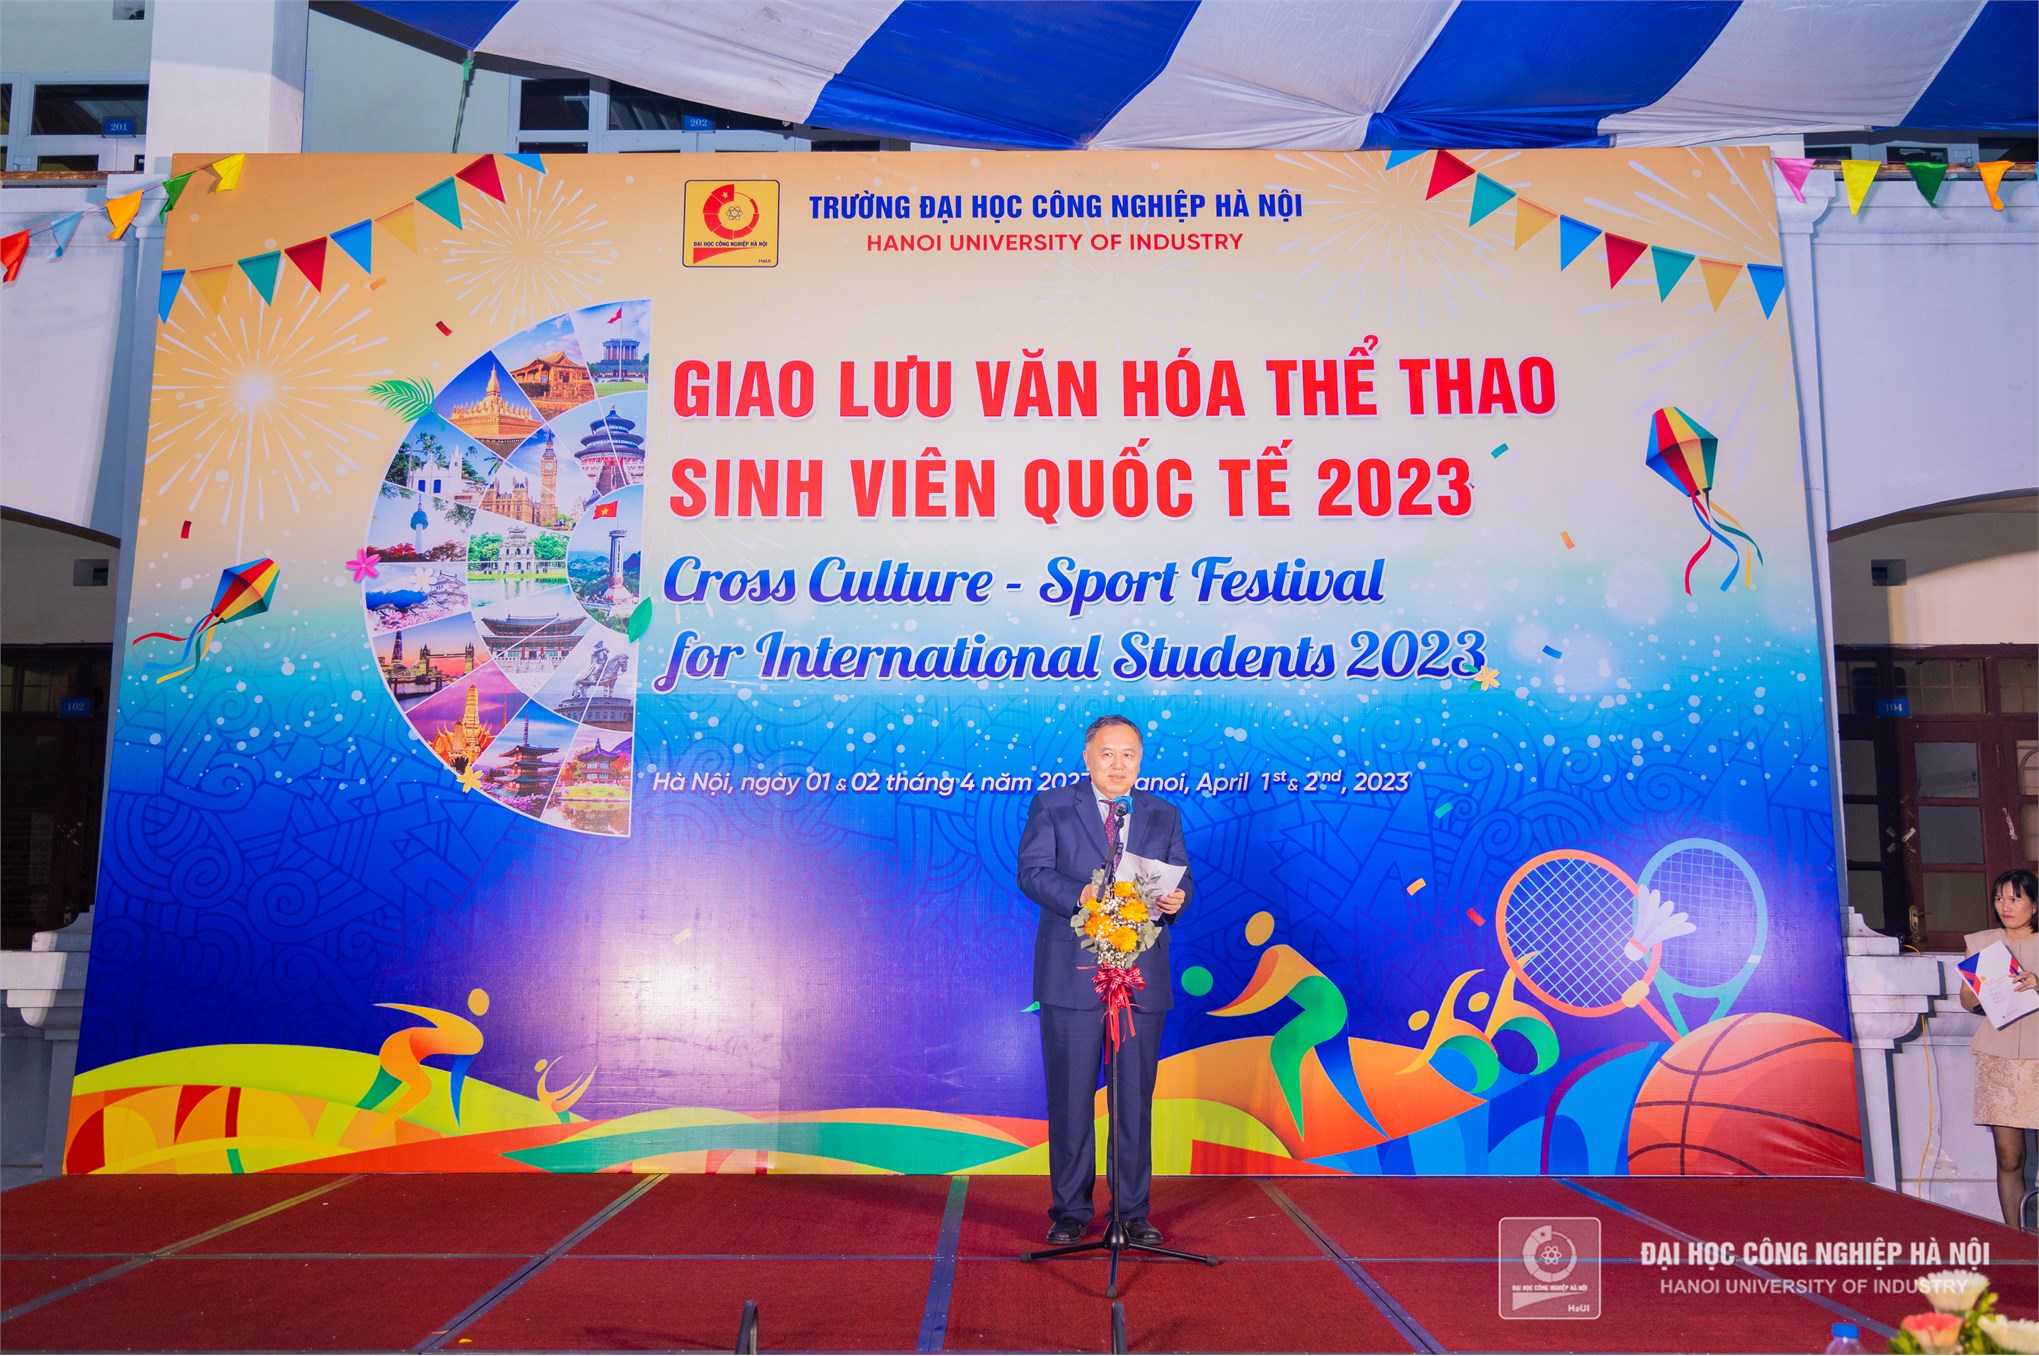 Hội tụ tinh hoa văn hóa thế giới tại ngày hội giao lưu văn hóa thể thao sinh viên quốc tế năm 2023